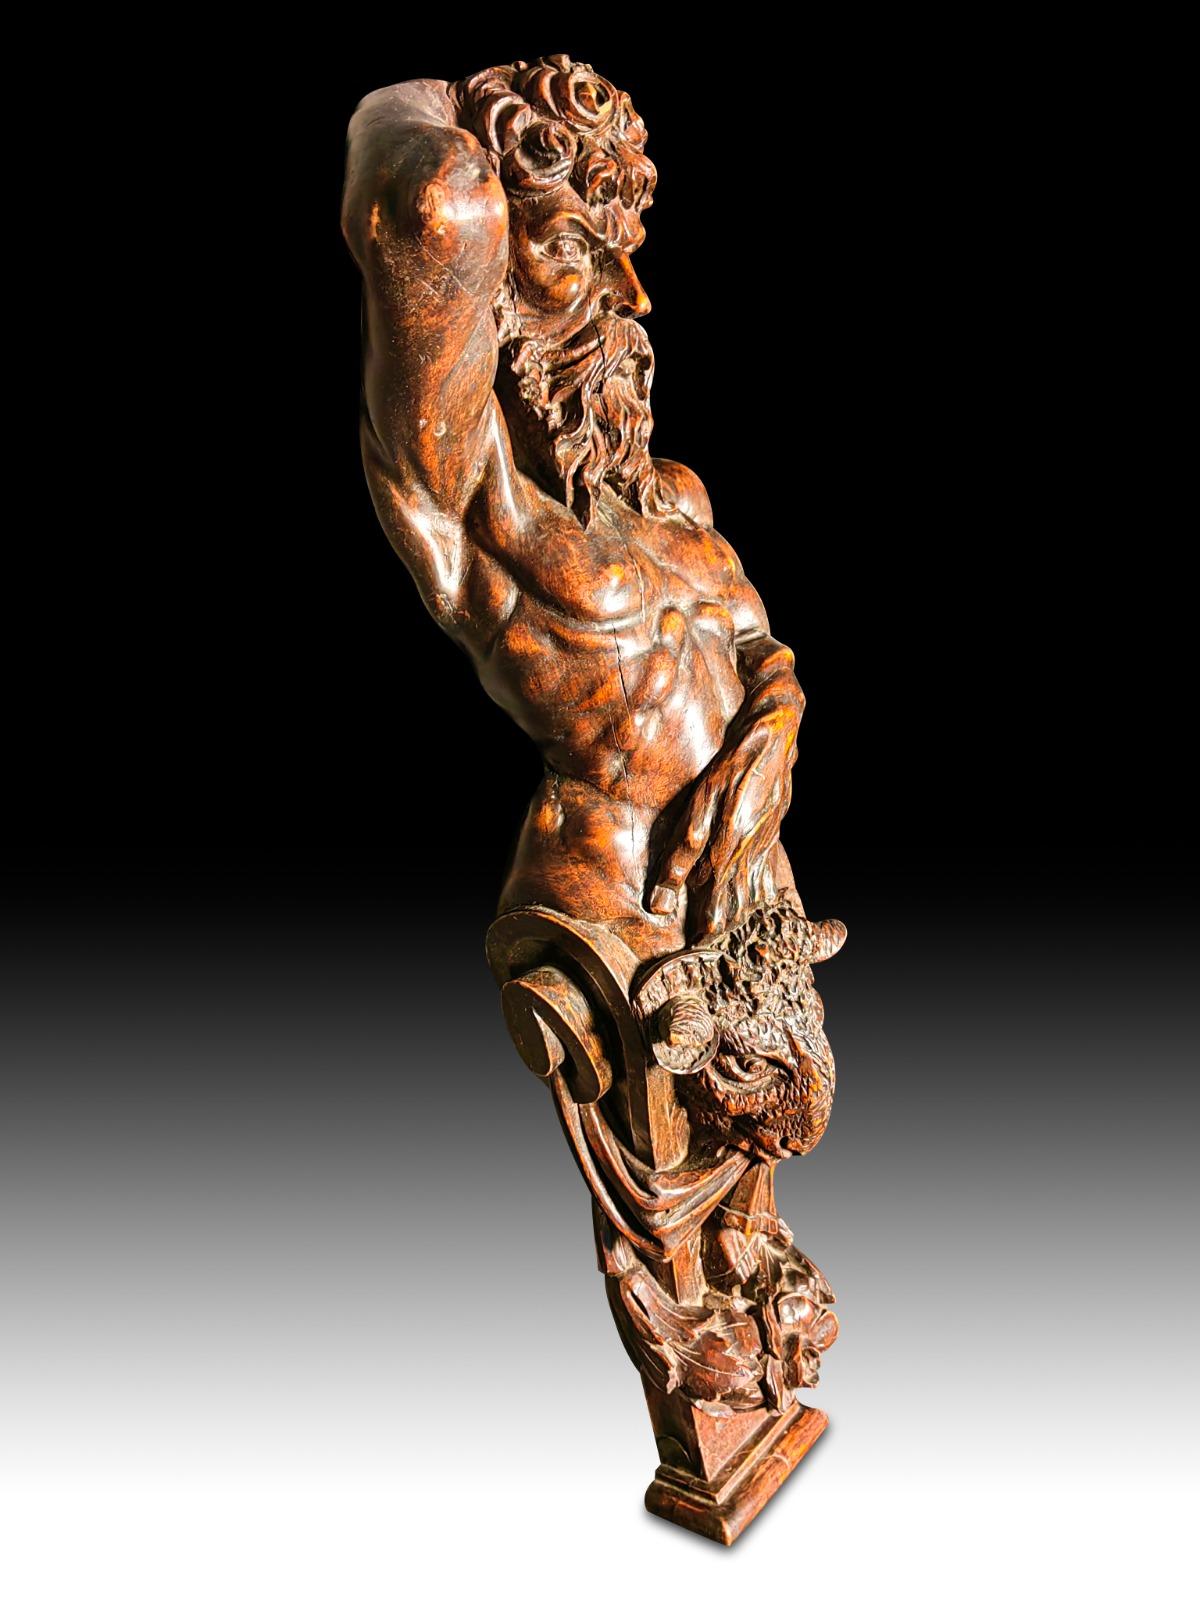 L'Atlantide en bois XIXème siècle. Sculpture en bois représentant une atlantide du XIXe siècle. 
Mesures : 70 cm de haut 
Très bon état.